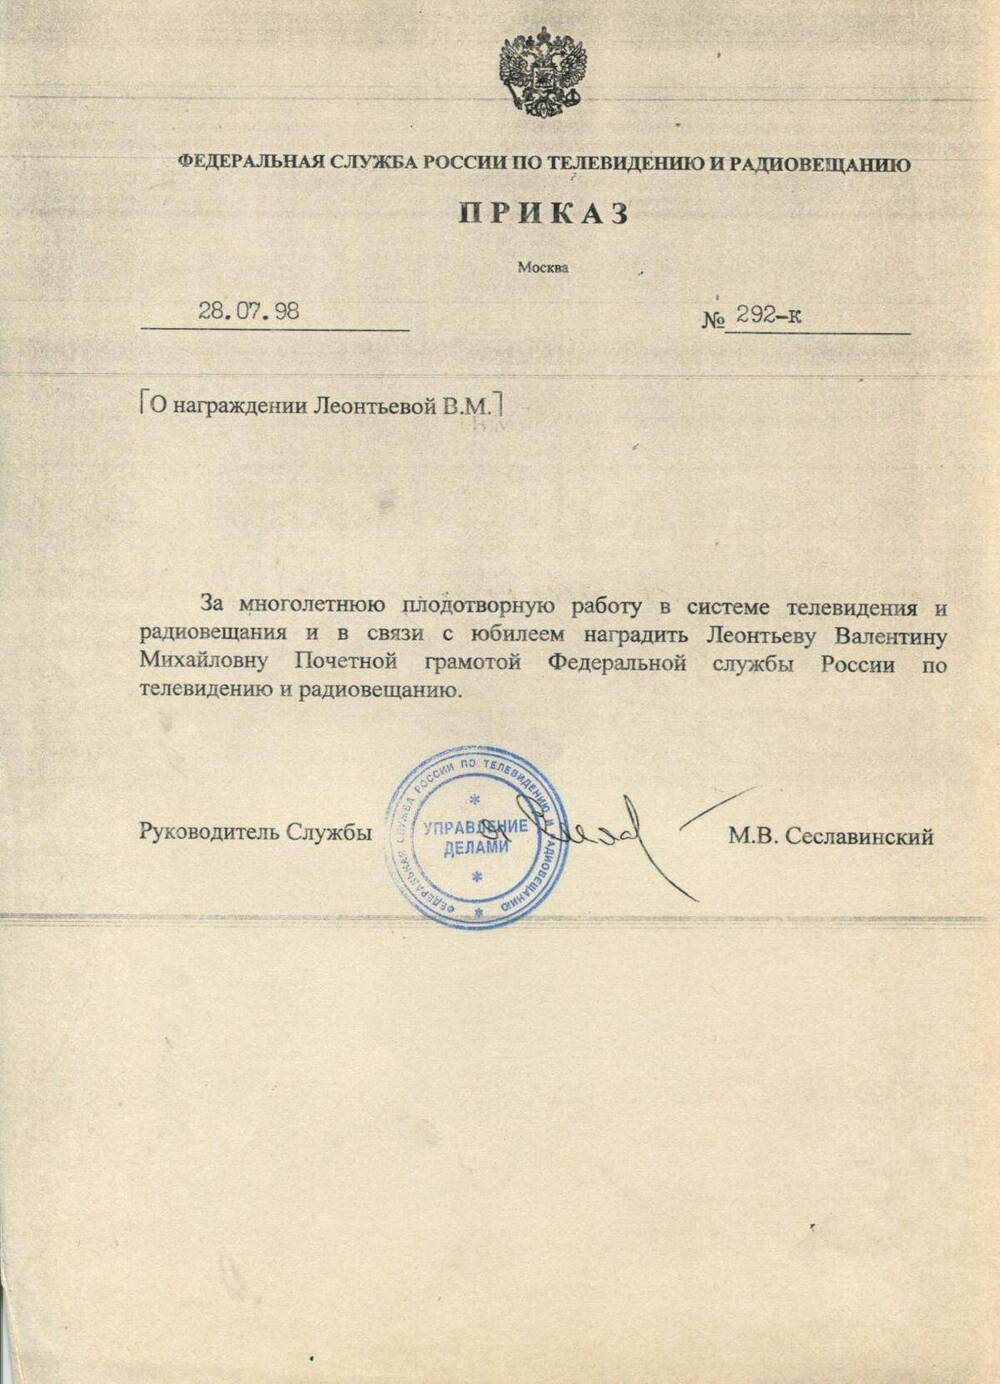 Приказ № 292-к о награждении В.М.Леонтьевой.от 28.07.1998 г.